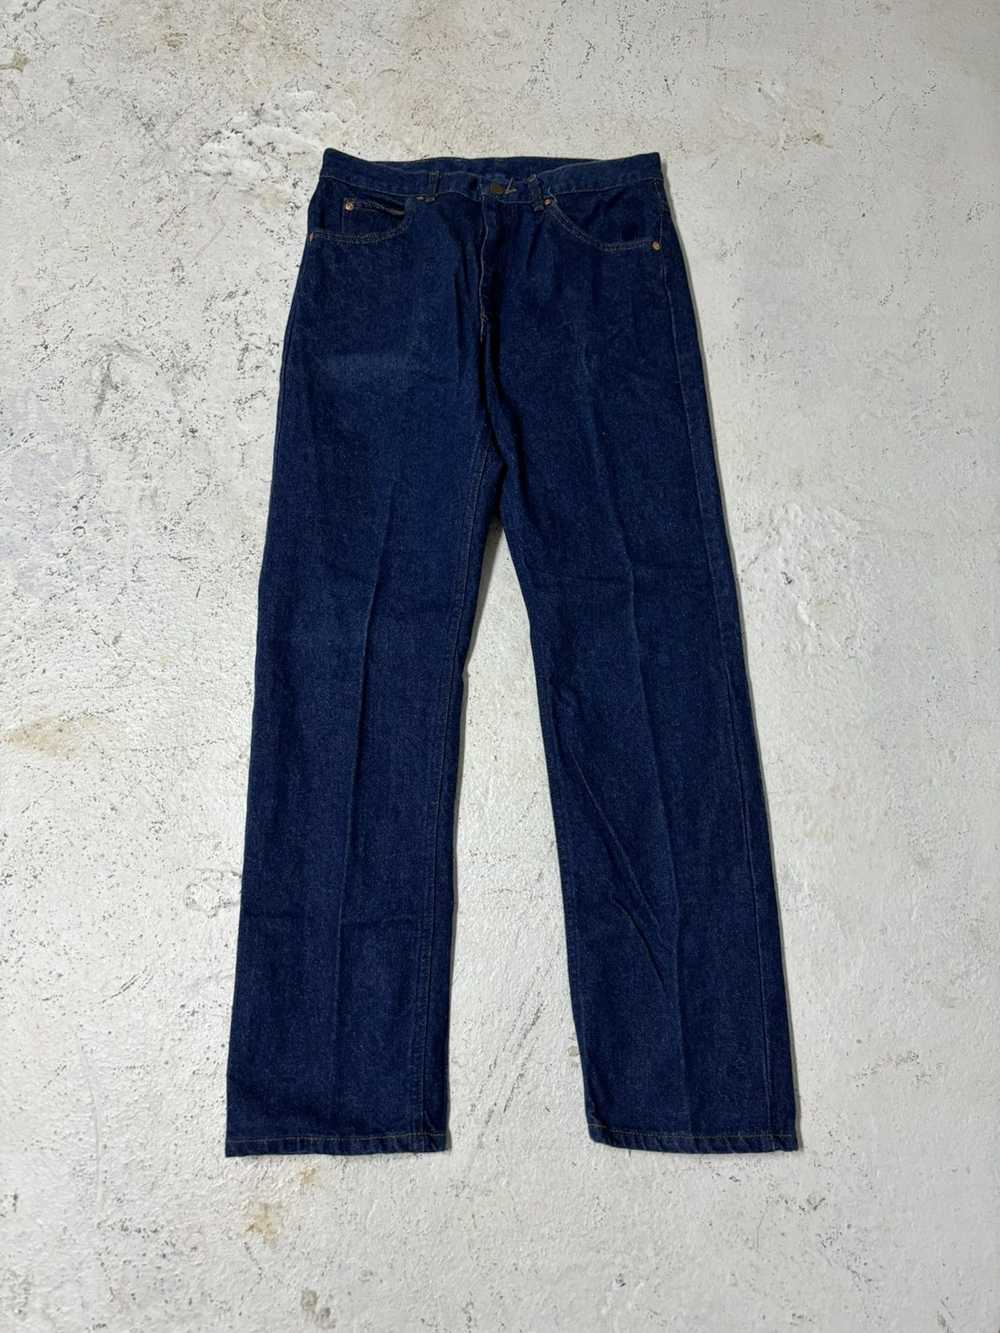 Lee × Made In Usa × Vintage Vintage 90s Lee jeans… - image 2